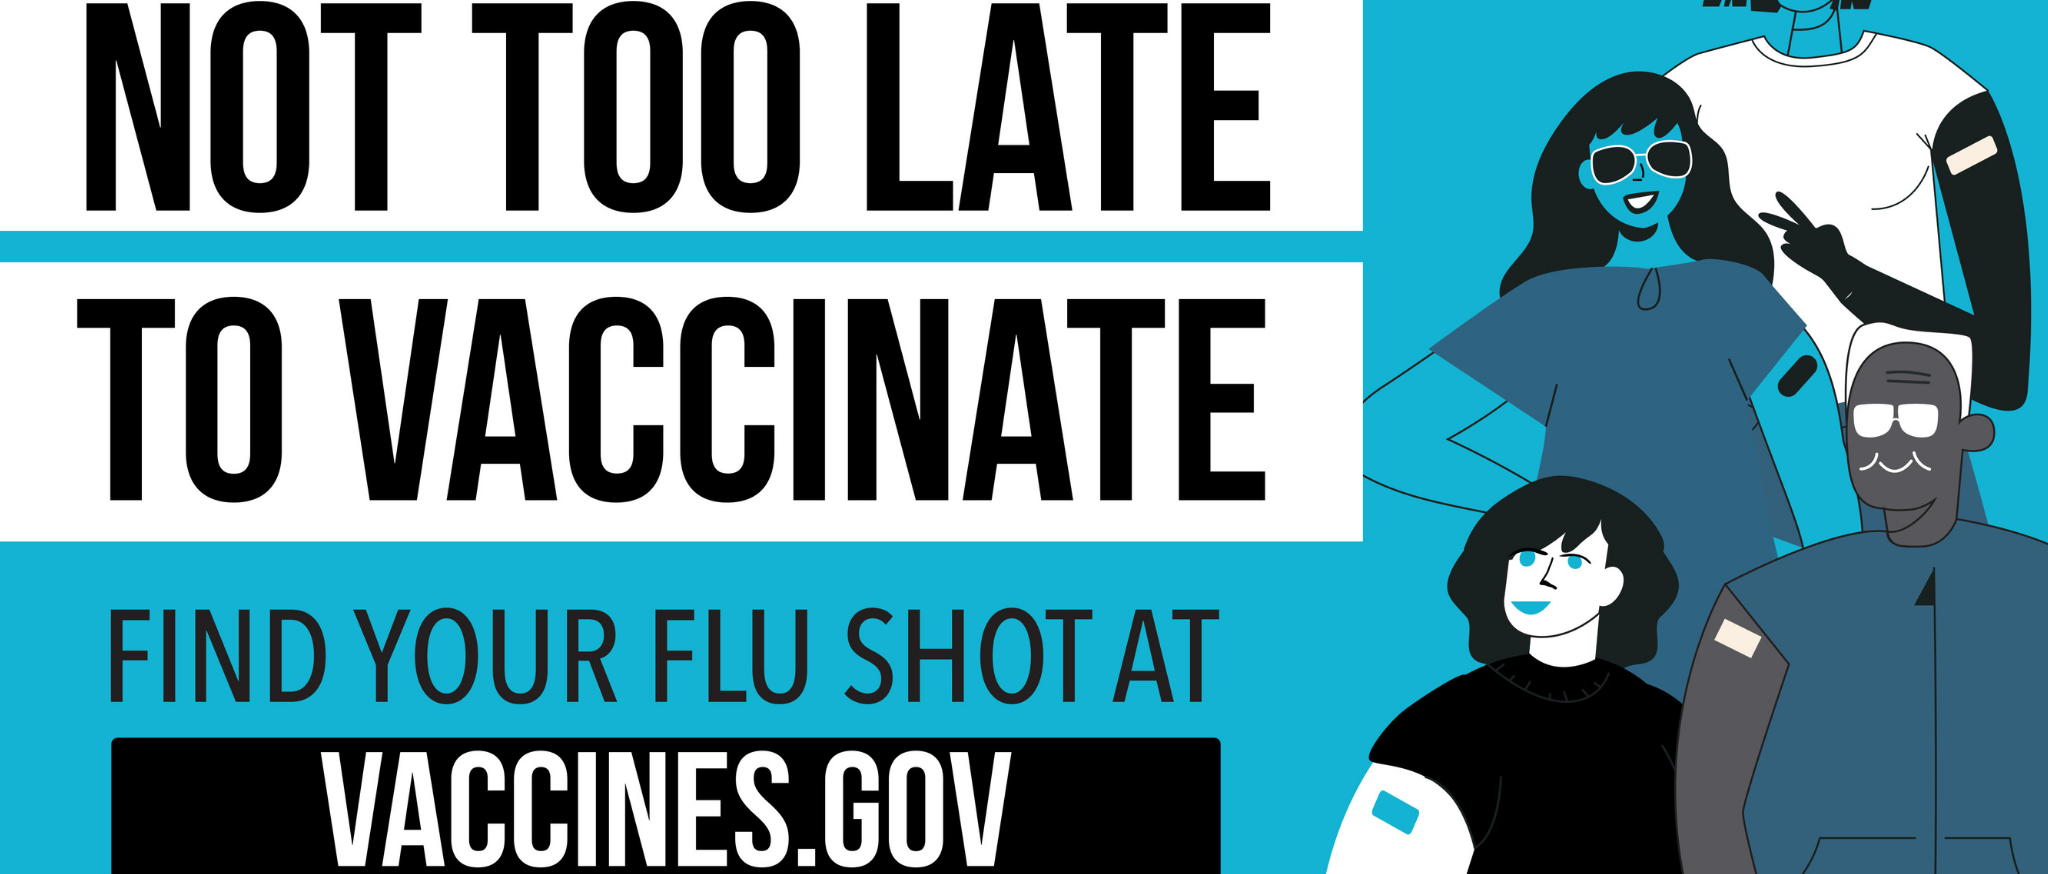 Flu-Shot-Not-Too-Late-Teaser